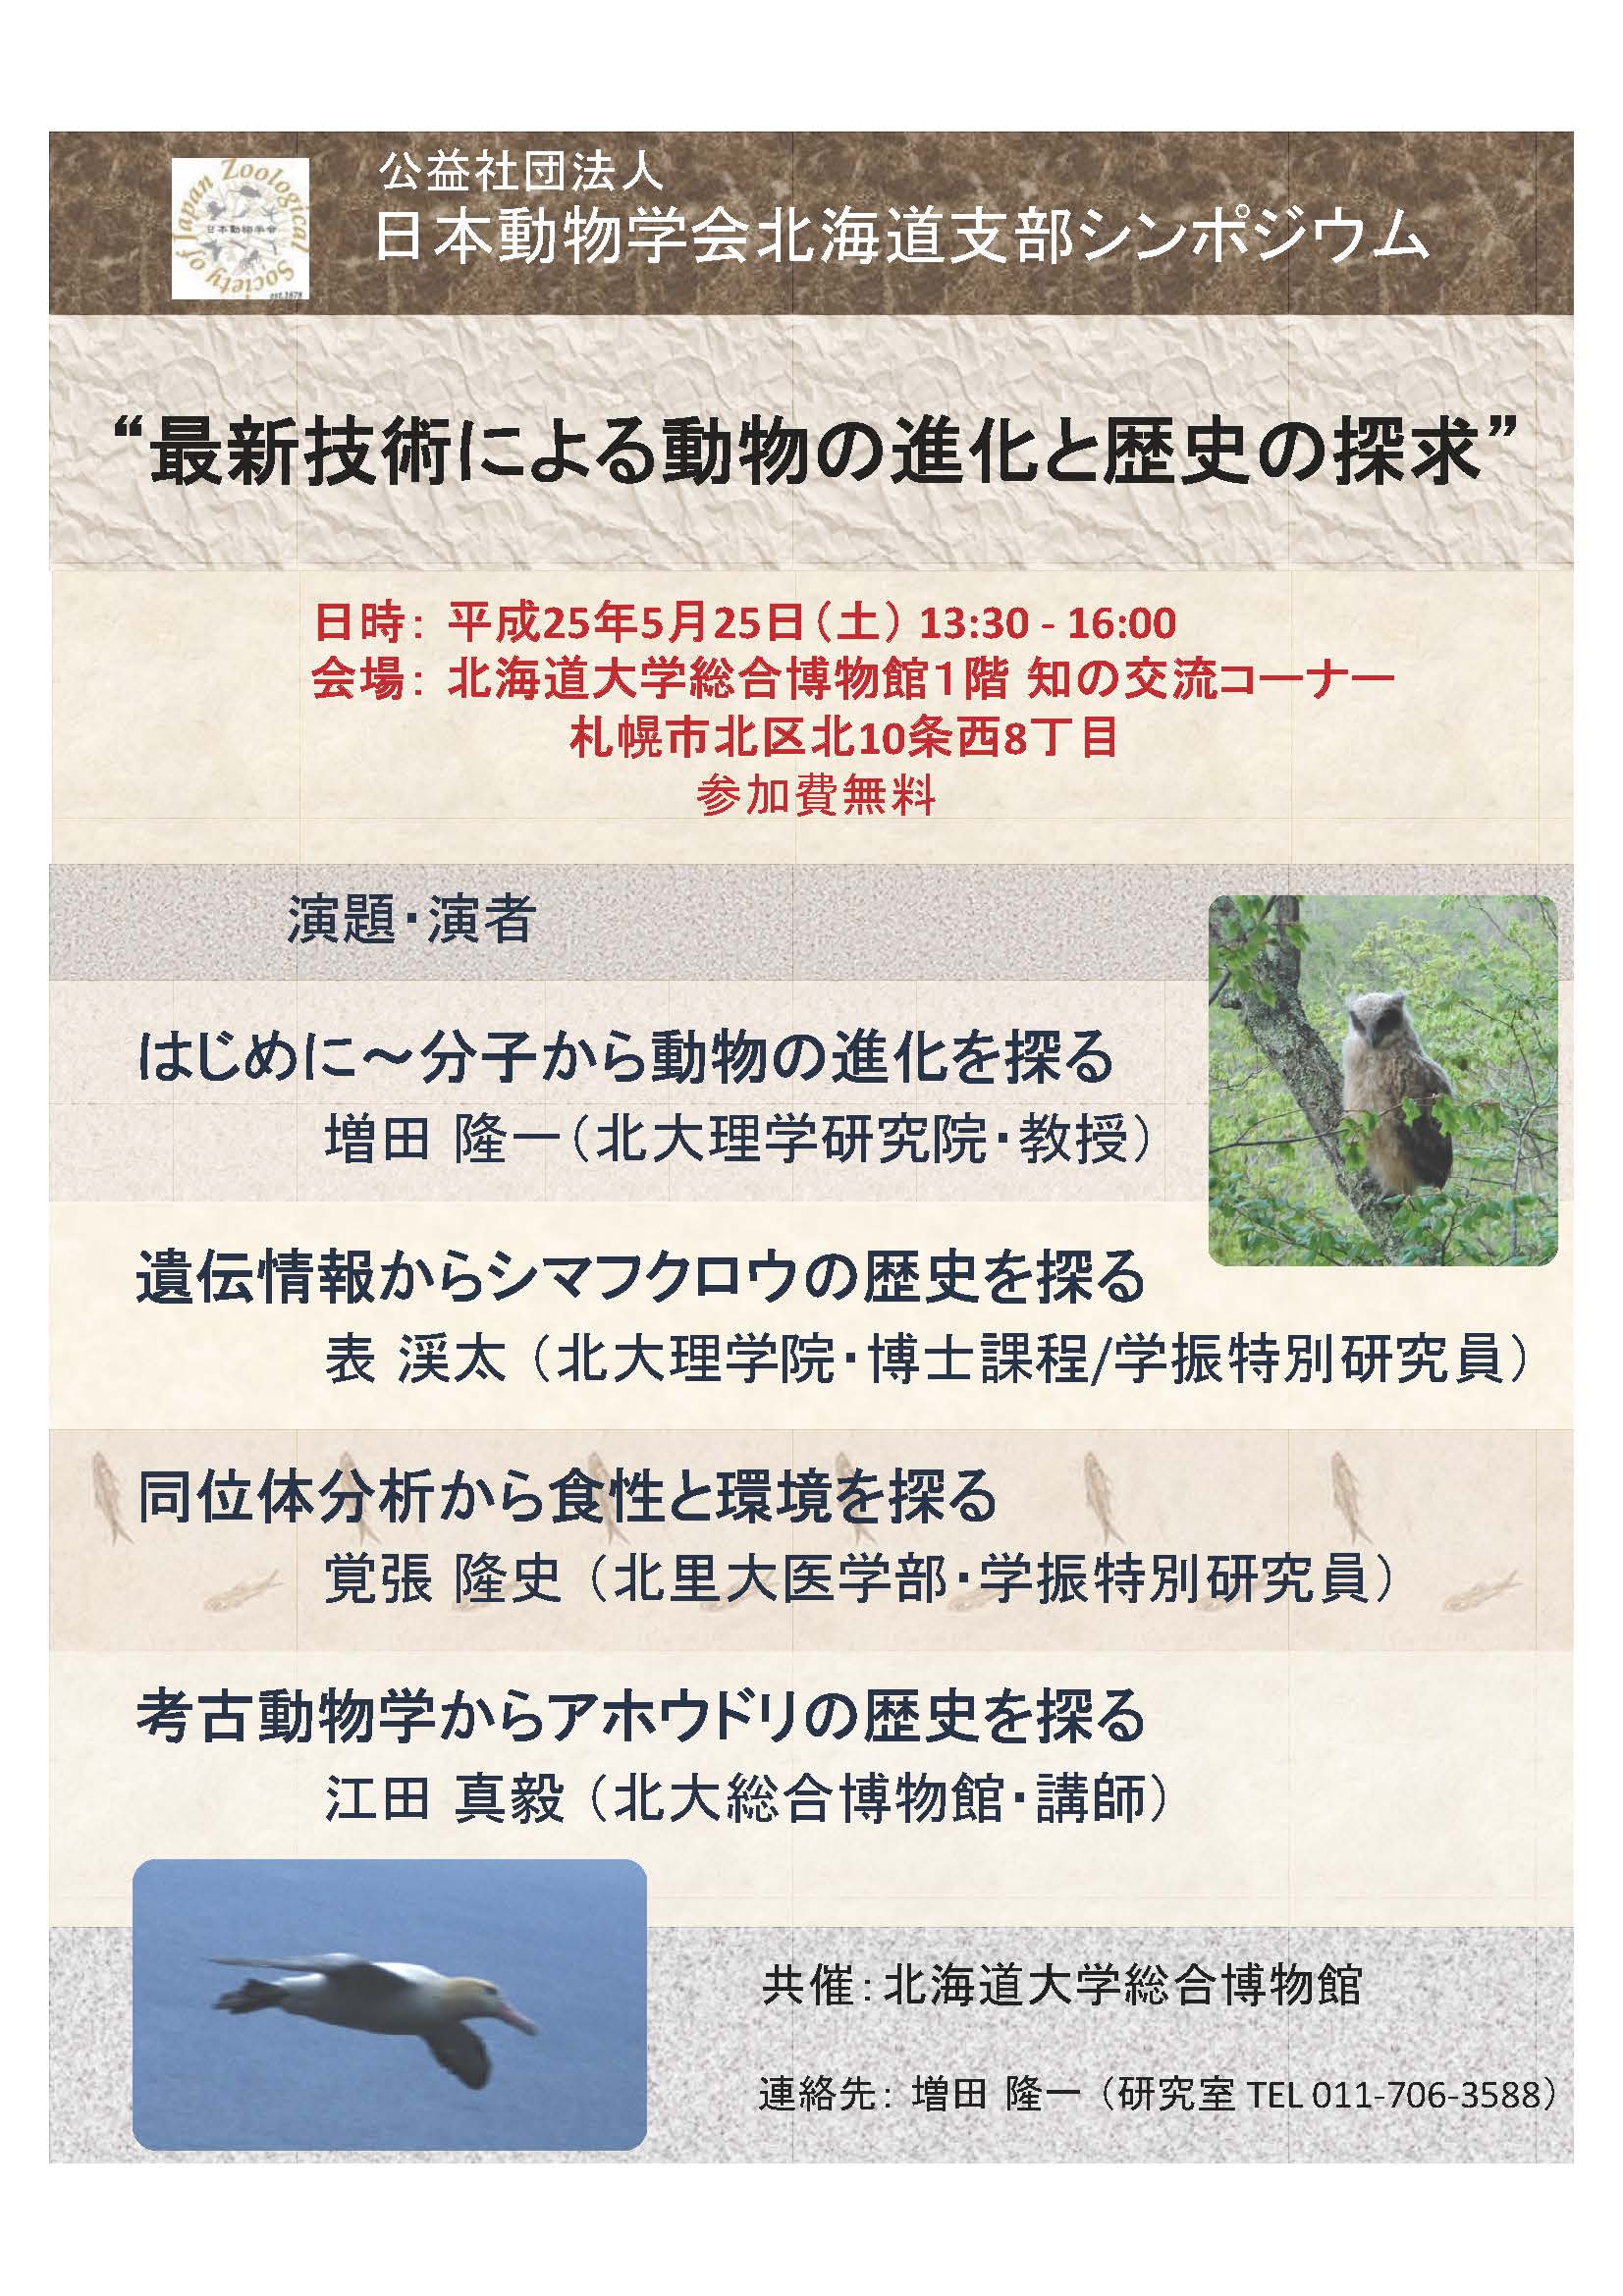 【５月２５日開催】日本動物学会北海道支部シンポジウム「最新技術による動物の進化と歴史の探求」